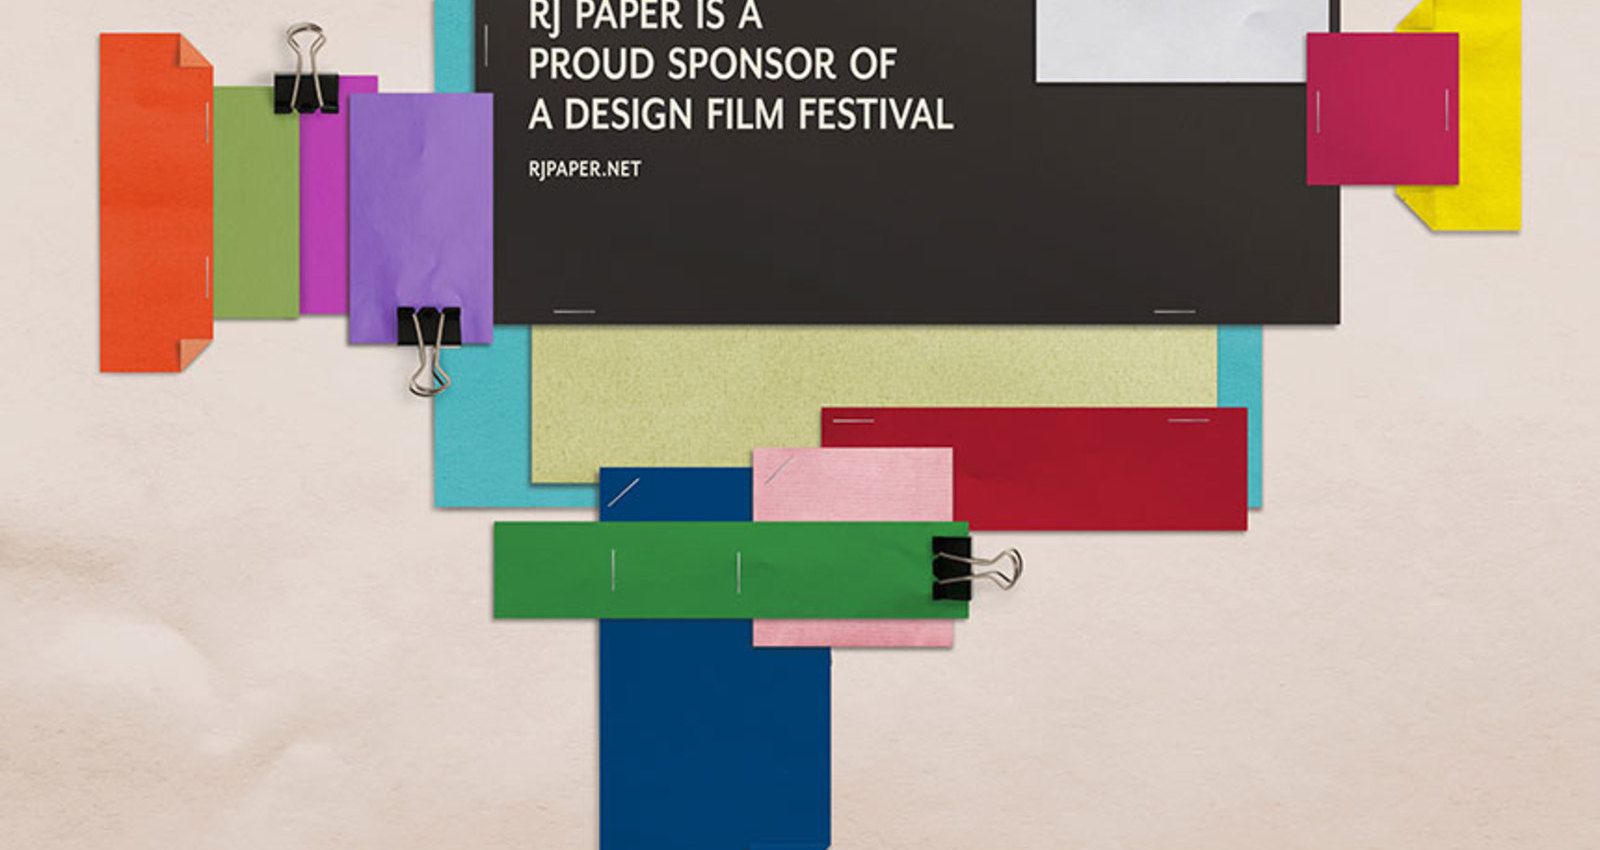 A Design Film Festival